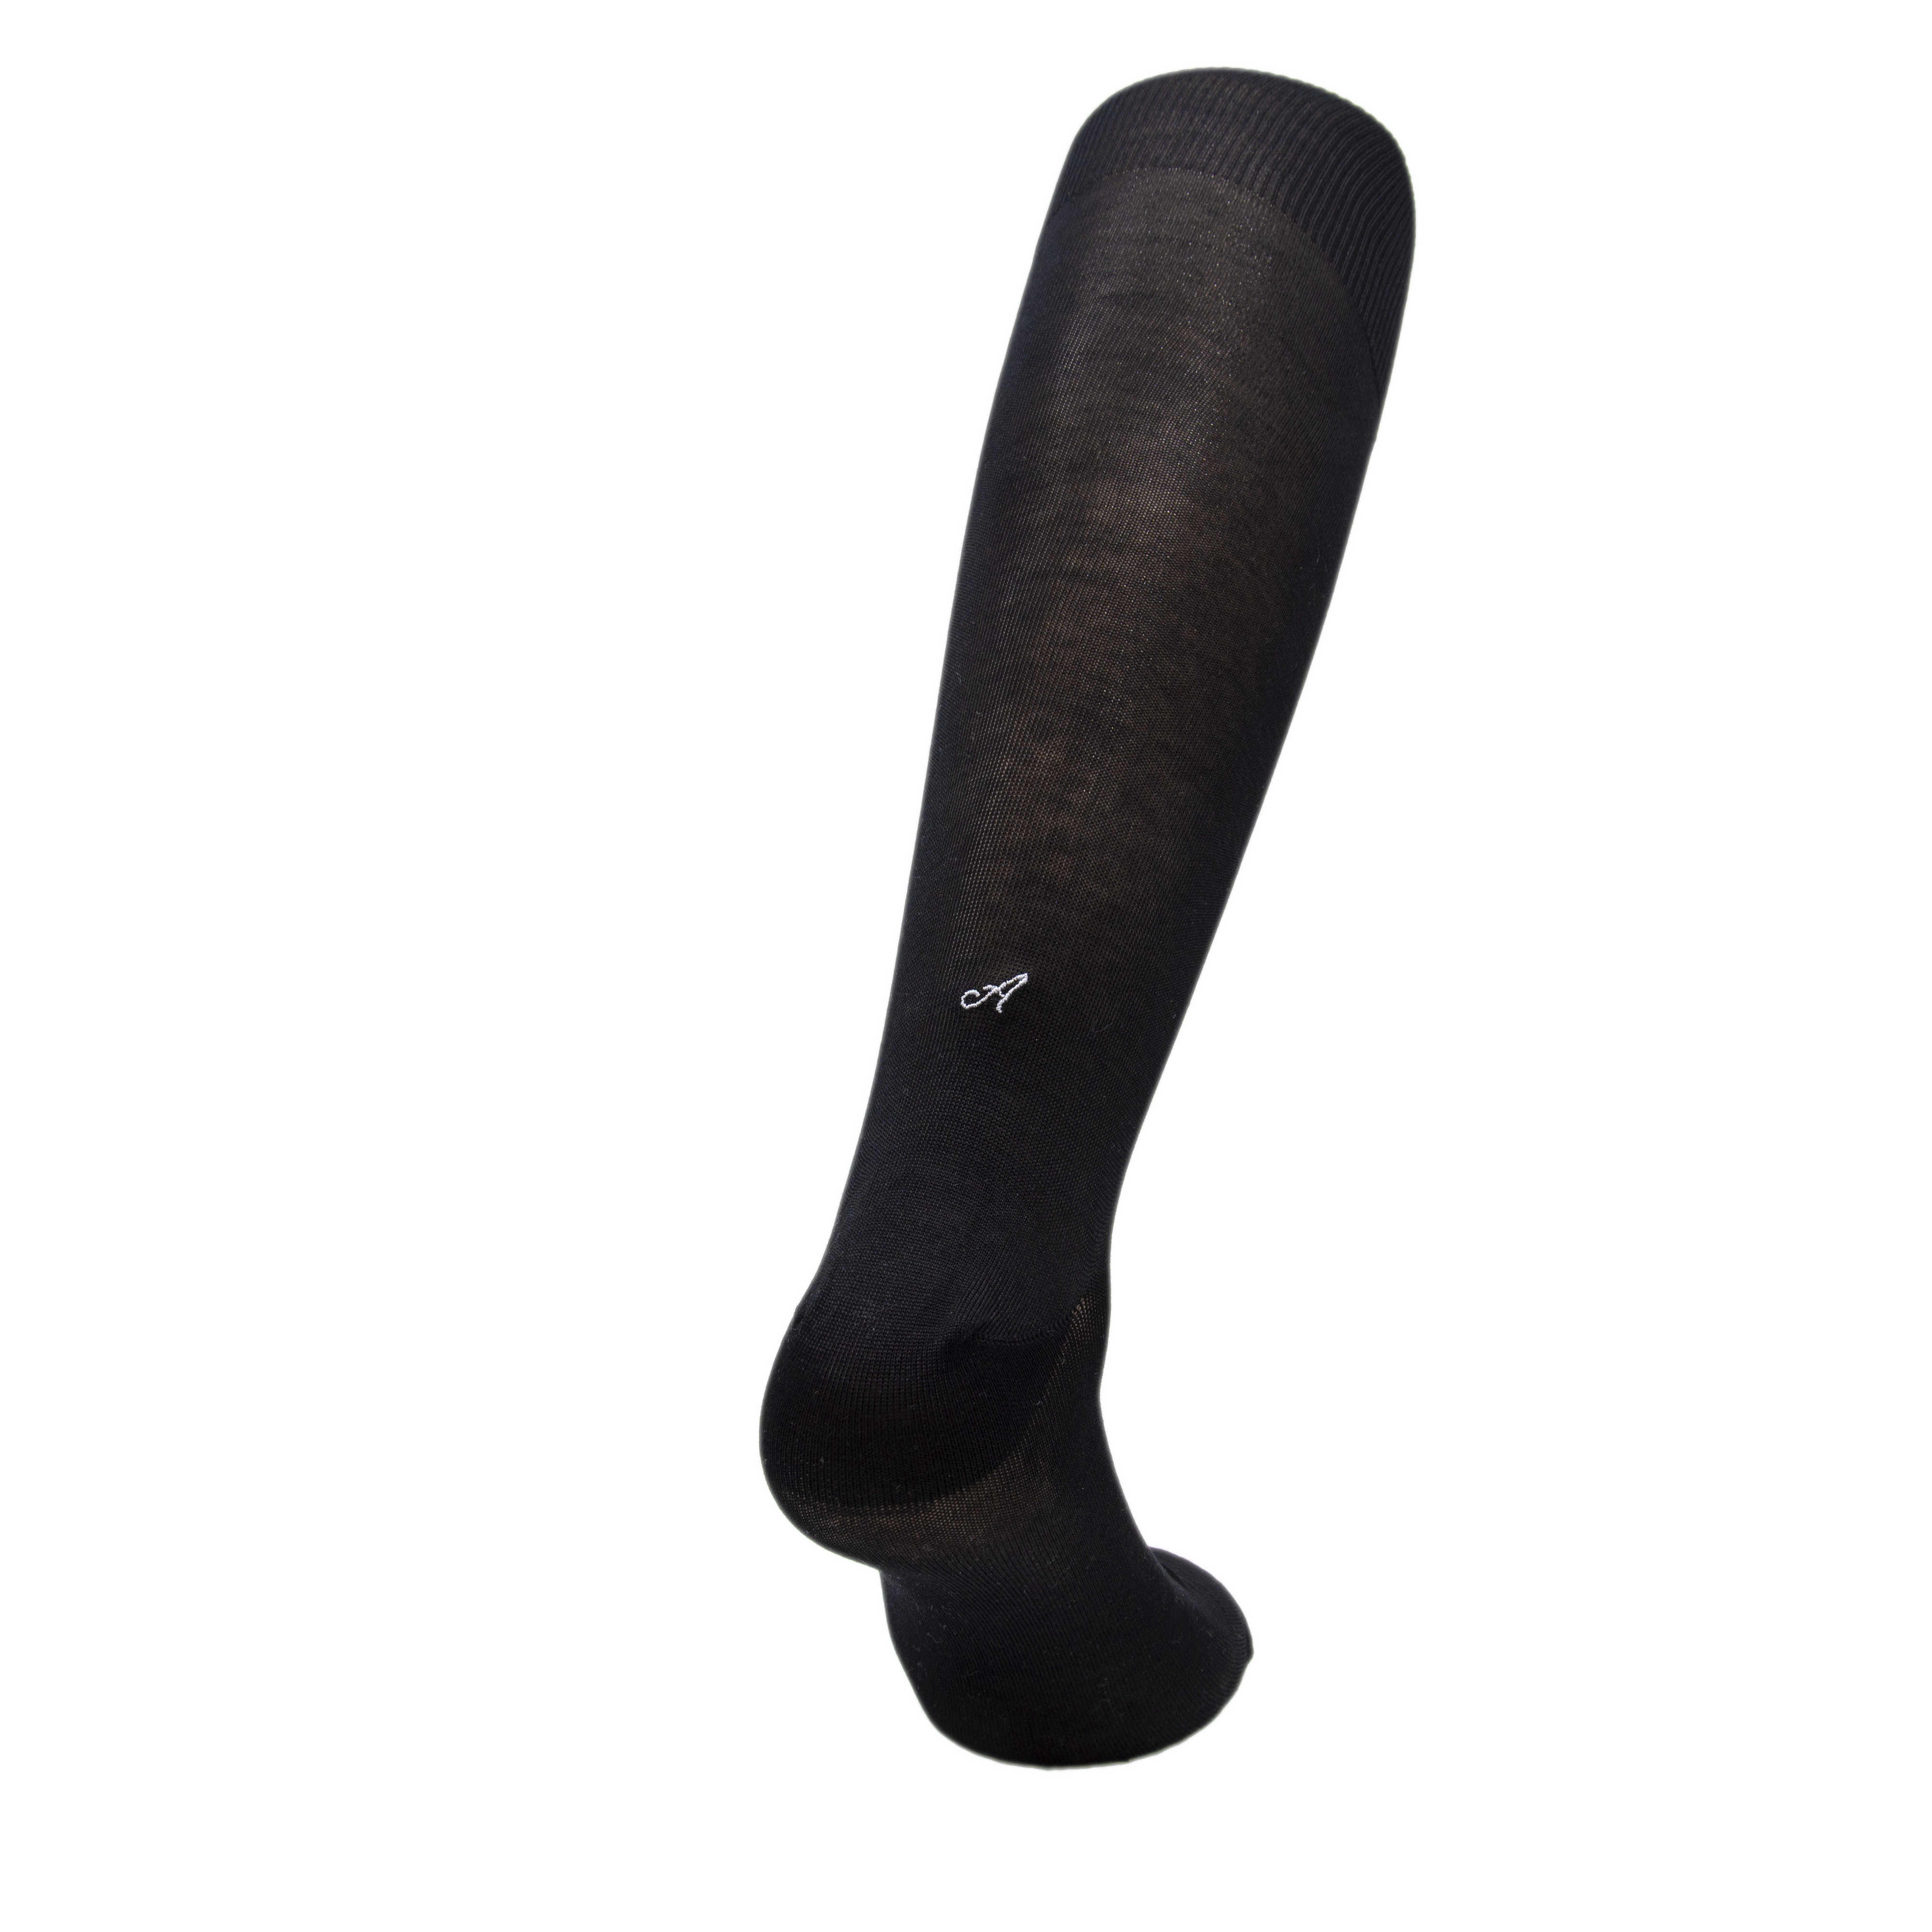 Black Men's Socks with Italics Grey Initials - Filo di scozia Super light Stretch - Size 40/45 - 169